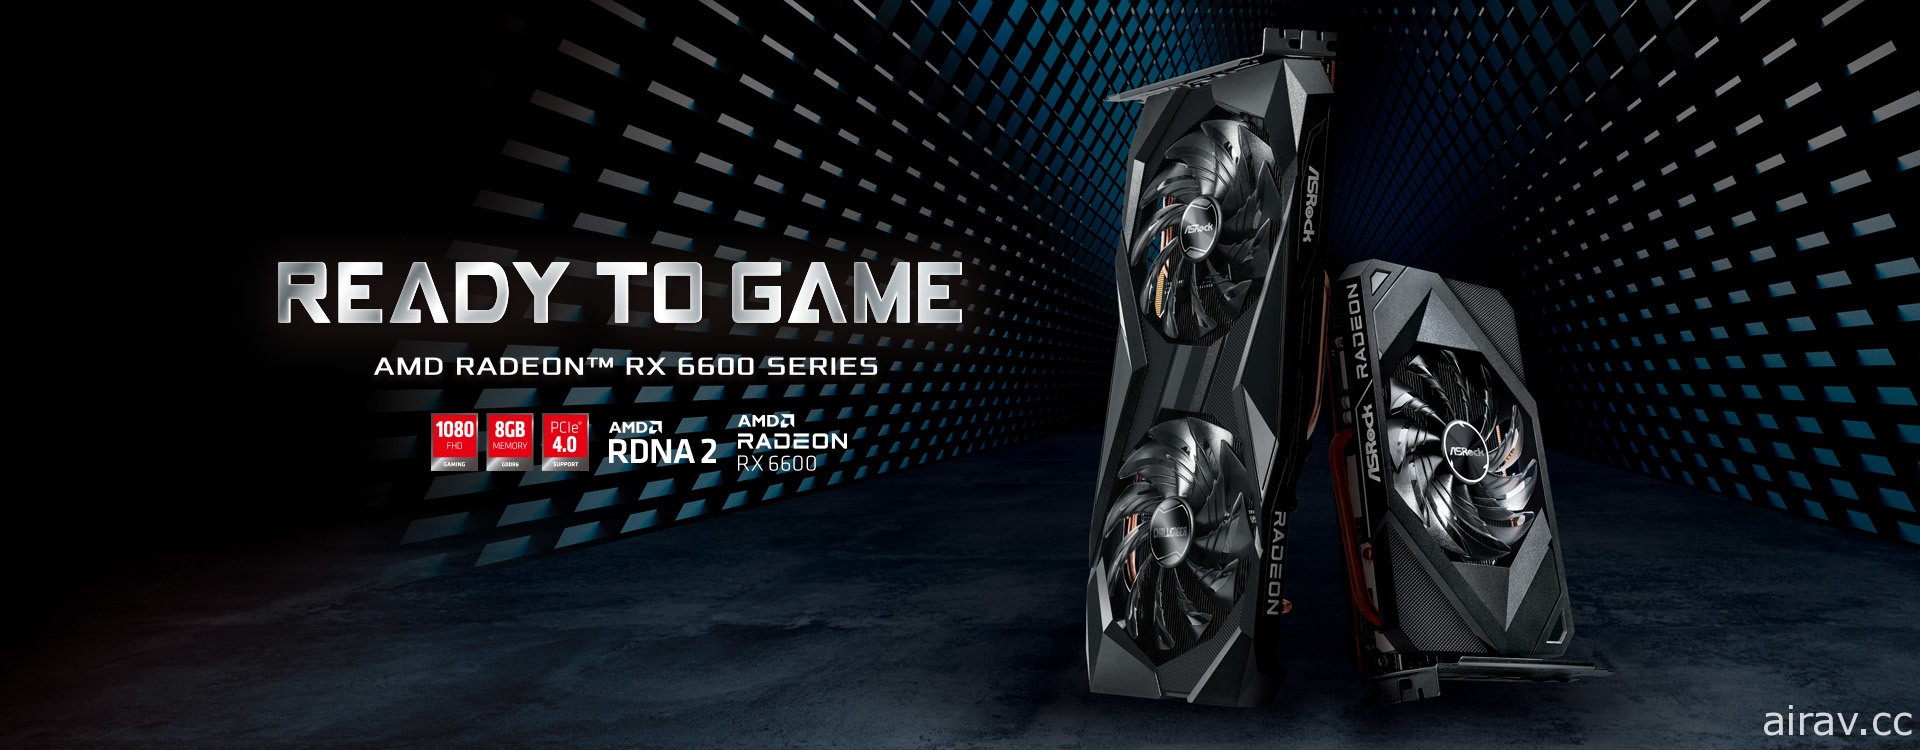 华擎科技公布 AMD Radeon RX 6600 系列显示卡